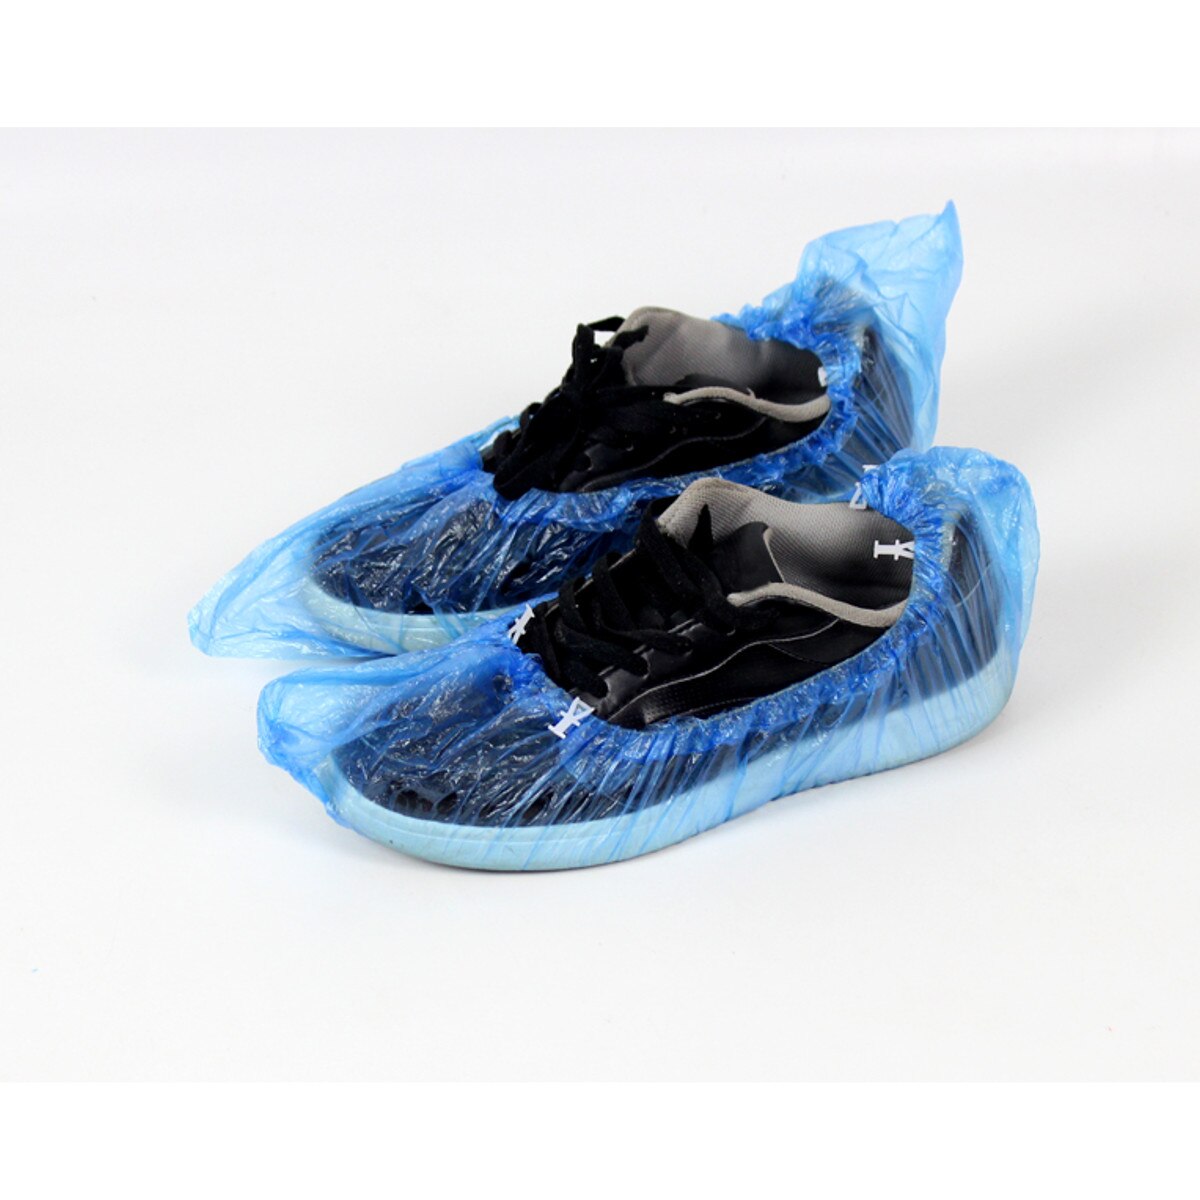 100 stk / sæt plast vandtæt engangs skoovertræk regnvejrsdag gulvbeskytter rengøringsskoovertræk blå skoomslag